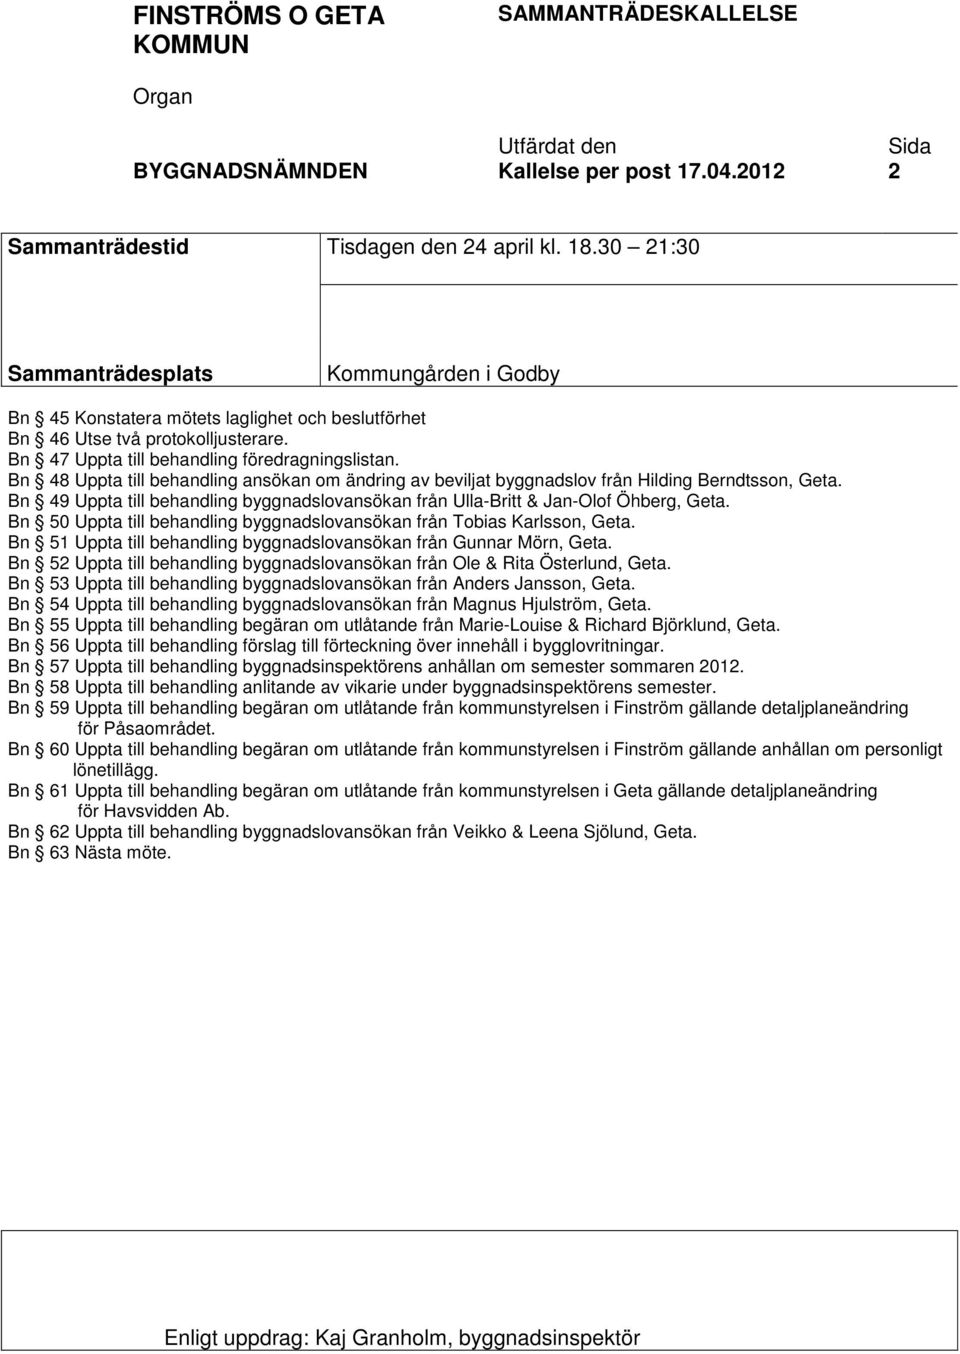 Bn 48 Uppta till behandling ansökan om ändring av beviljat byggnadslov från Hilding Berndtsson, Geta. Bn 49 Uppta till behandling byggnadslovansökan från Ulla-Britt & Jan-Olof Öhberg, Geta.